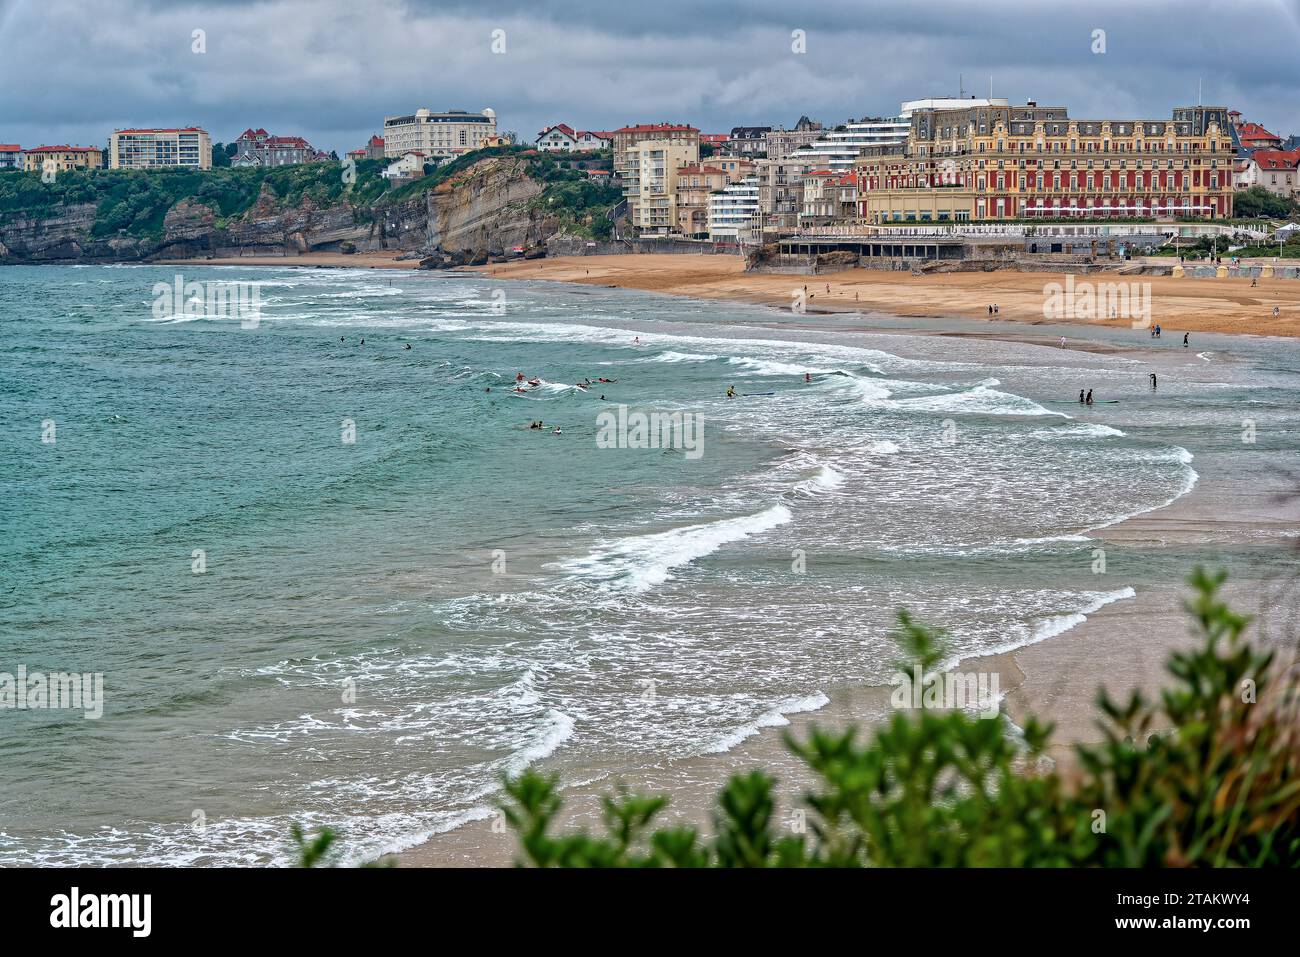 la plage de biarritz au pays basque francais en ete apres la pluie avec quelques vacanciers et surfers Foto Stock